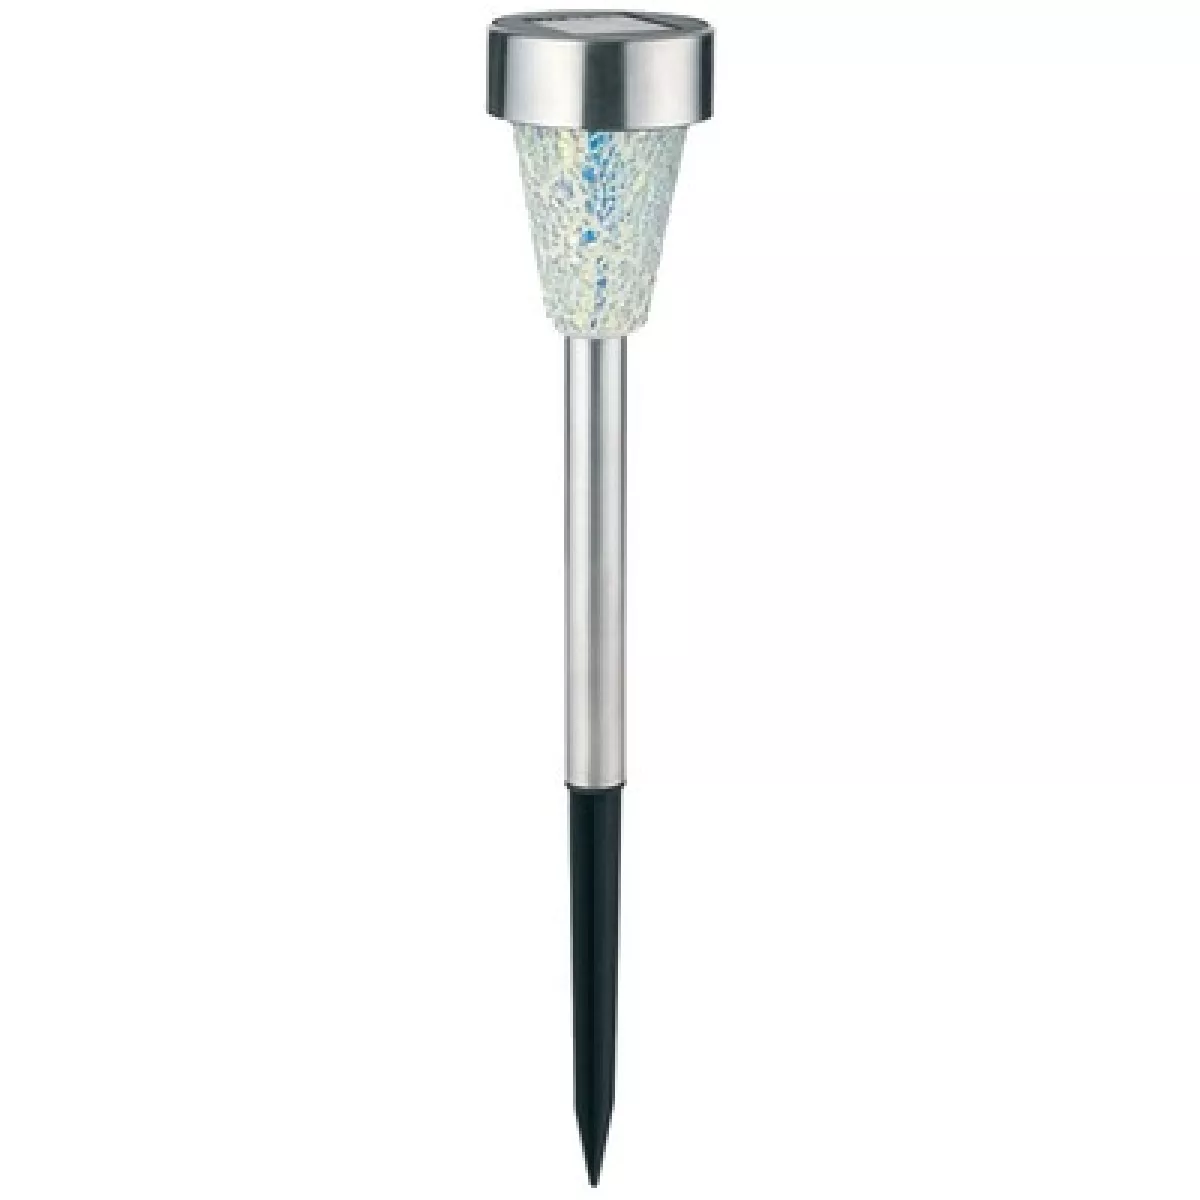 #2 - Solcelle havelampe - Mosaik/sølv, med spyd, 40cm høj